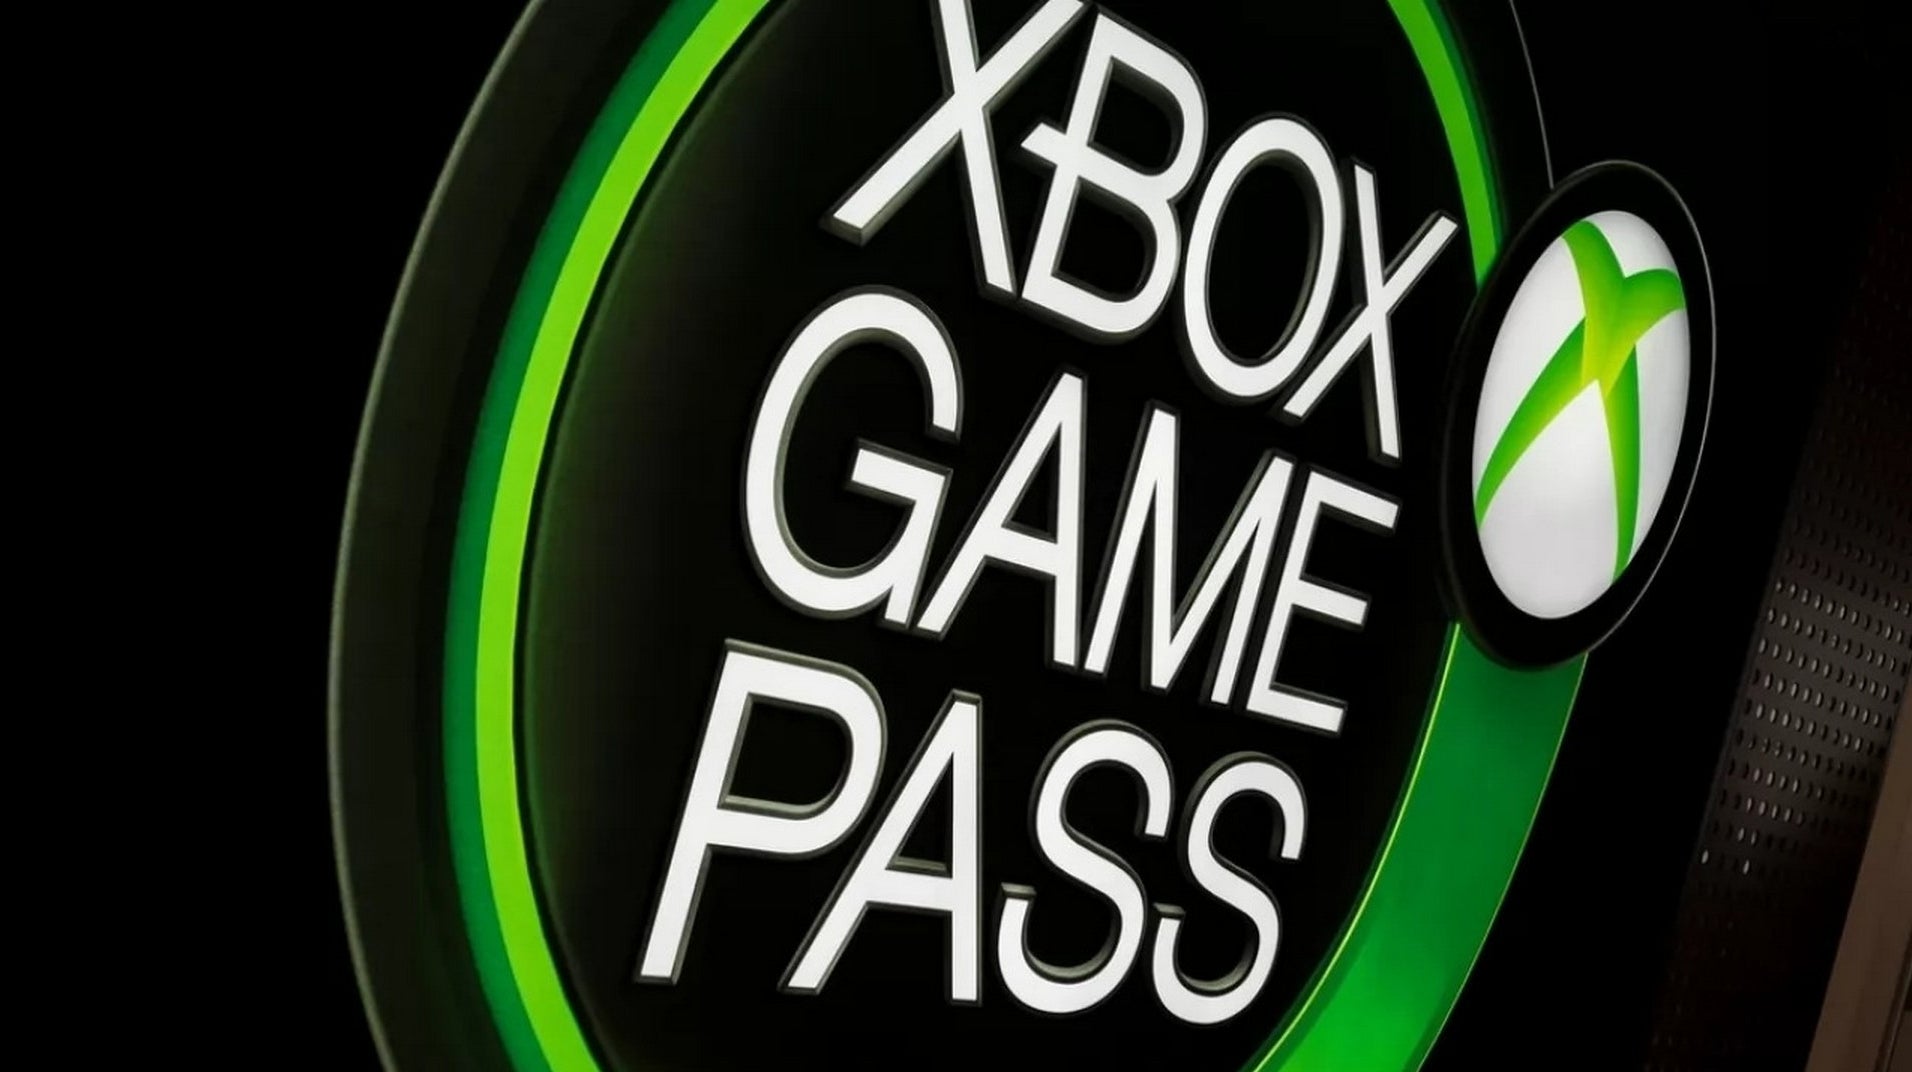 Immagine di Xbox Game Pass riceverà altri 9 giochi questa settimana, inclusi Mortal Kombat 11 e Firewatch